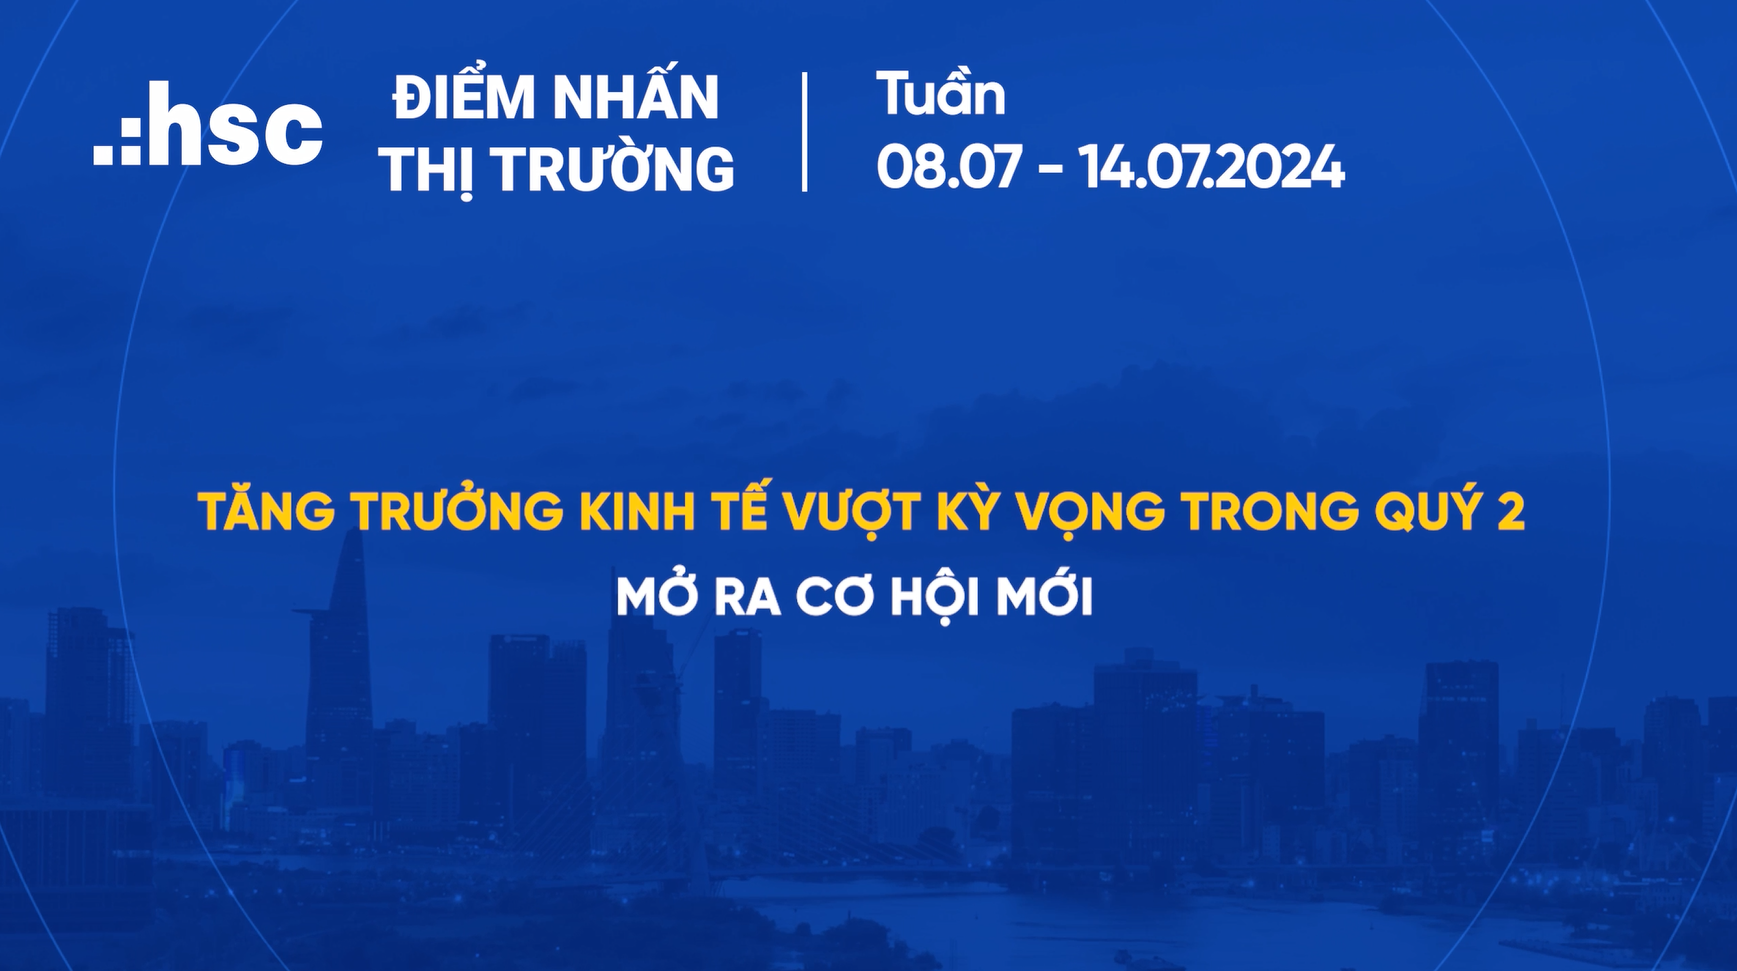 Việt Nam - Tăng trưởng kinh tế vượt kỳ vọng trong Quý 2 mở ra cơ hội mới